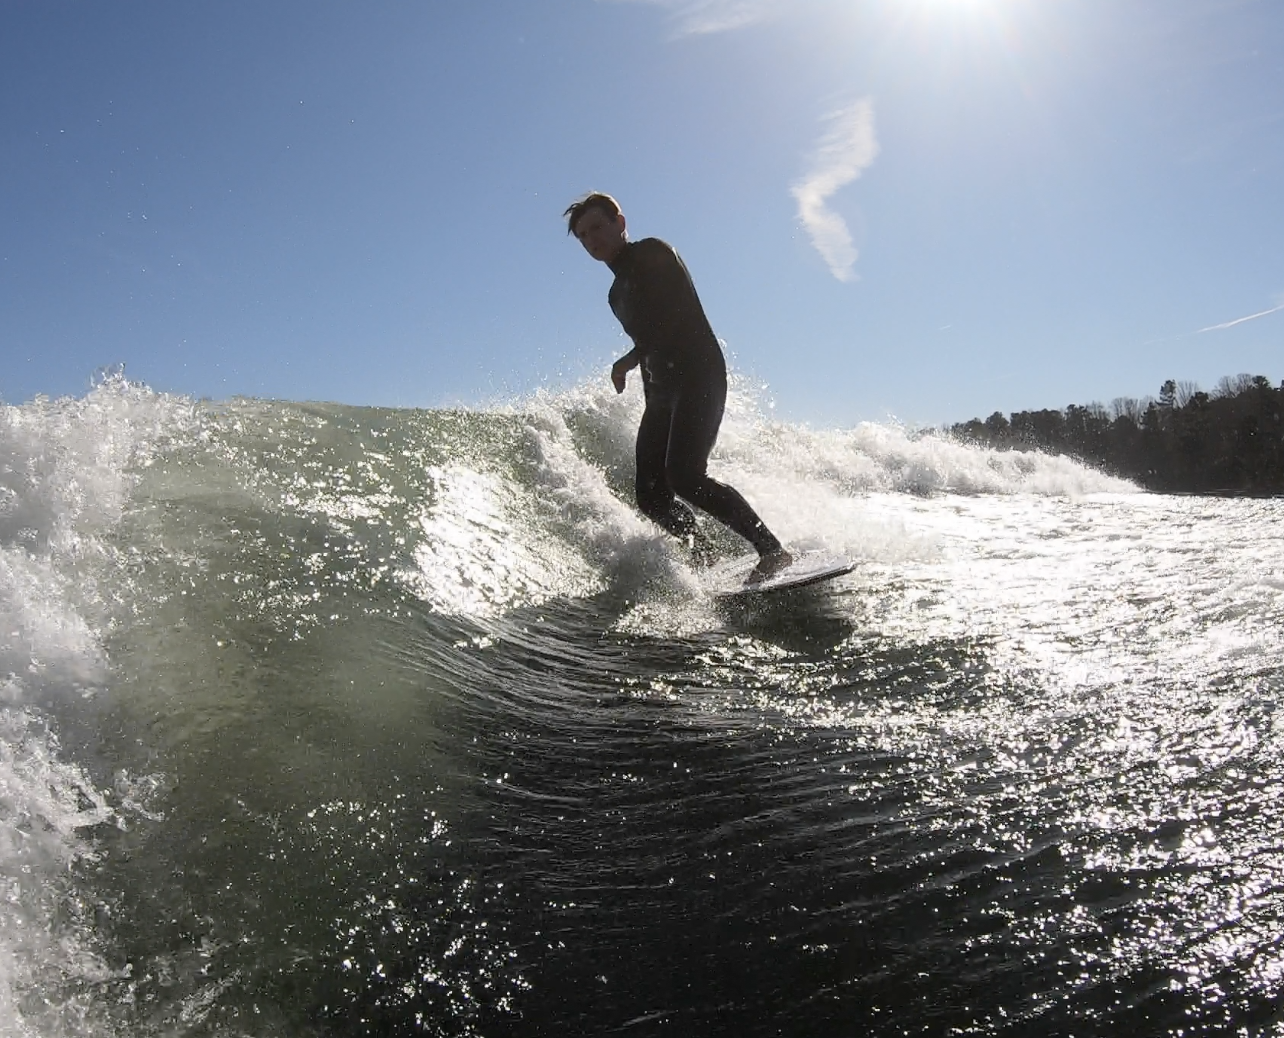 Do you struggle on the 360? #wakesurf #wakesurfing #summer